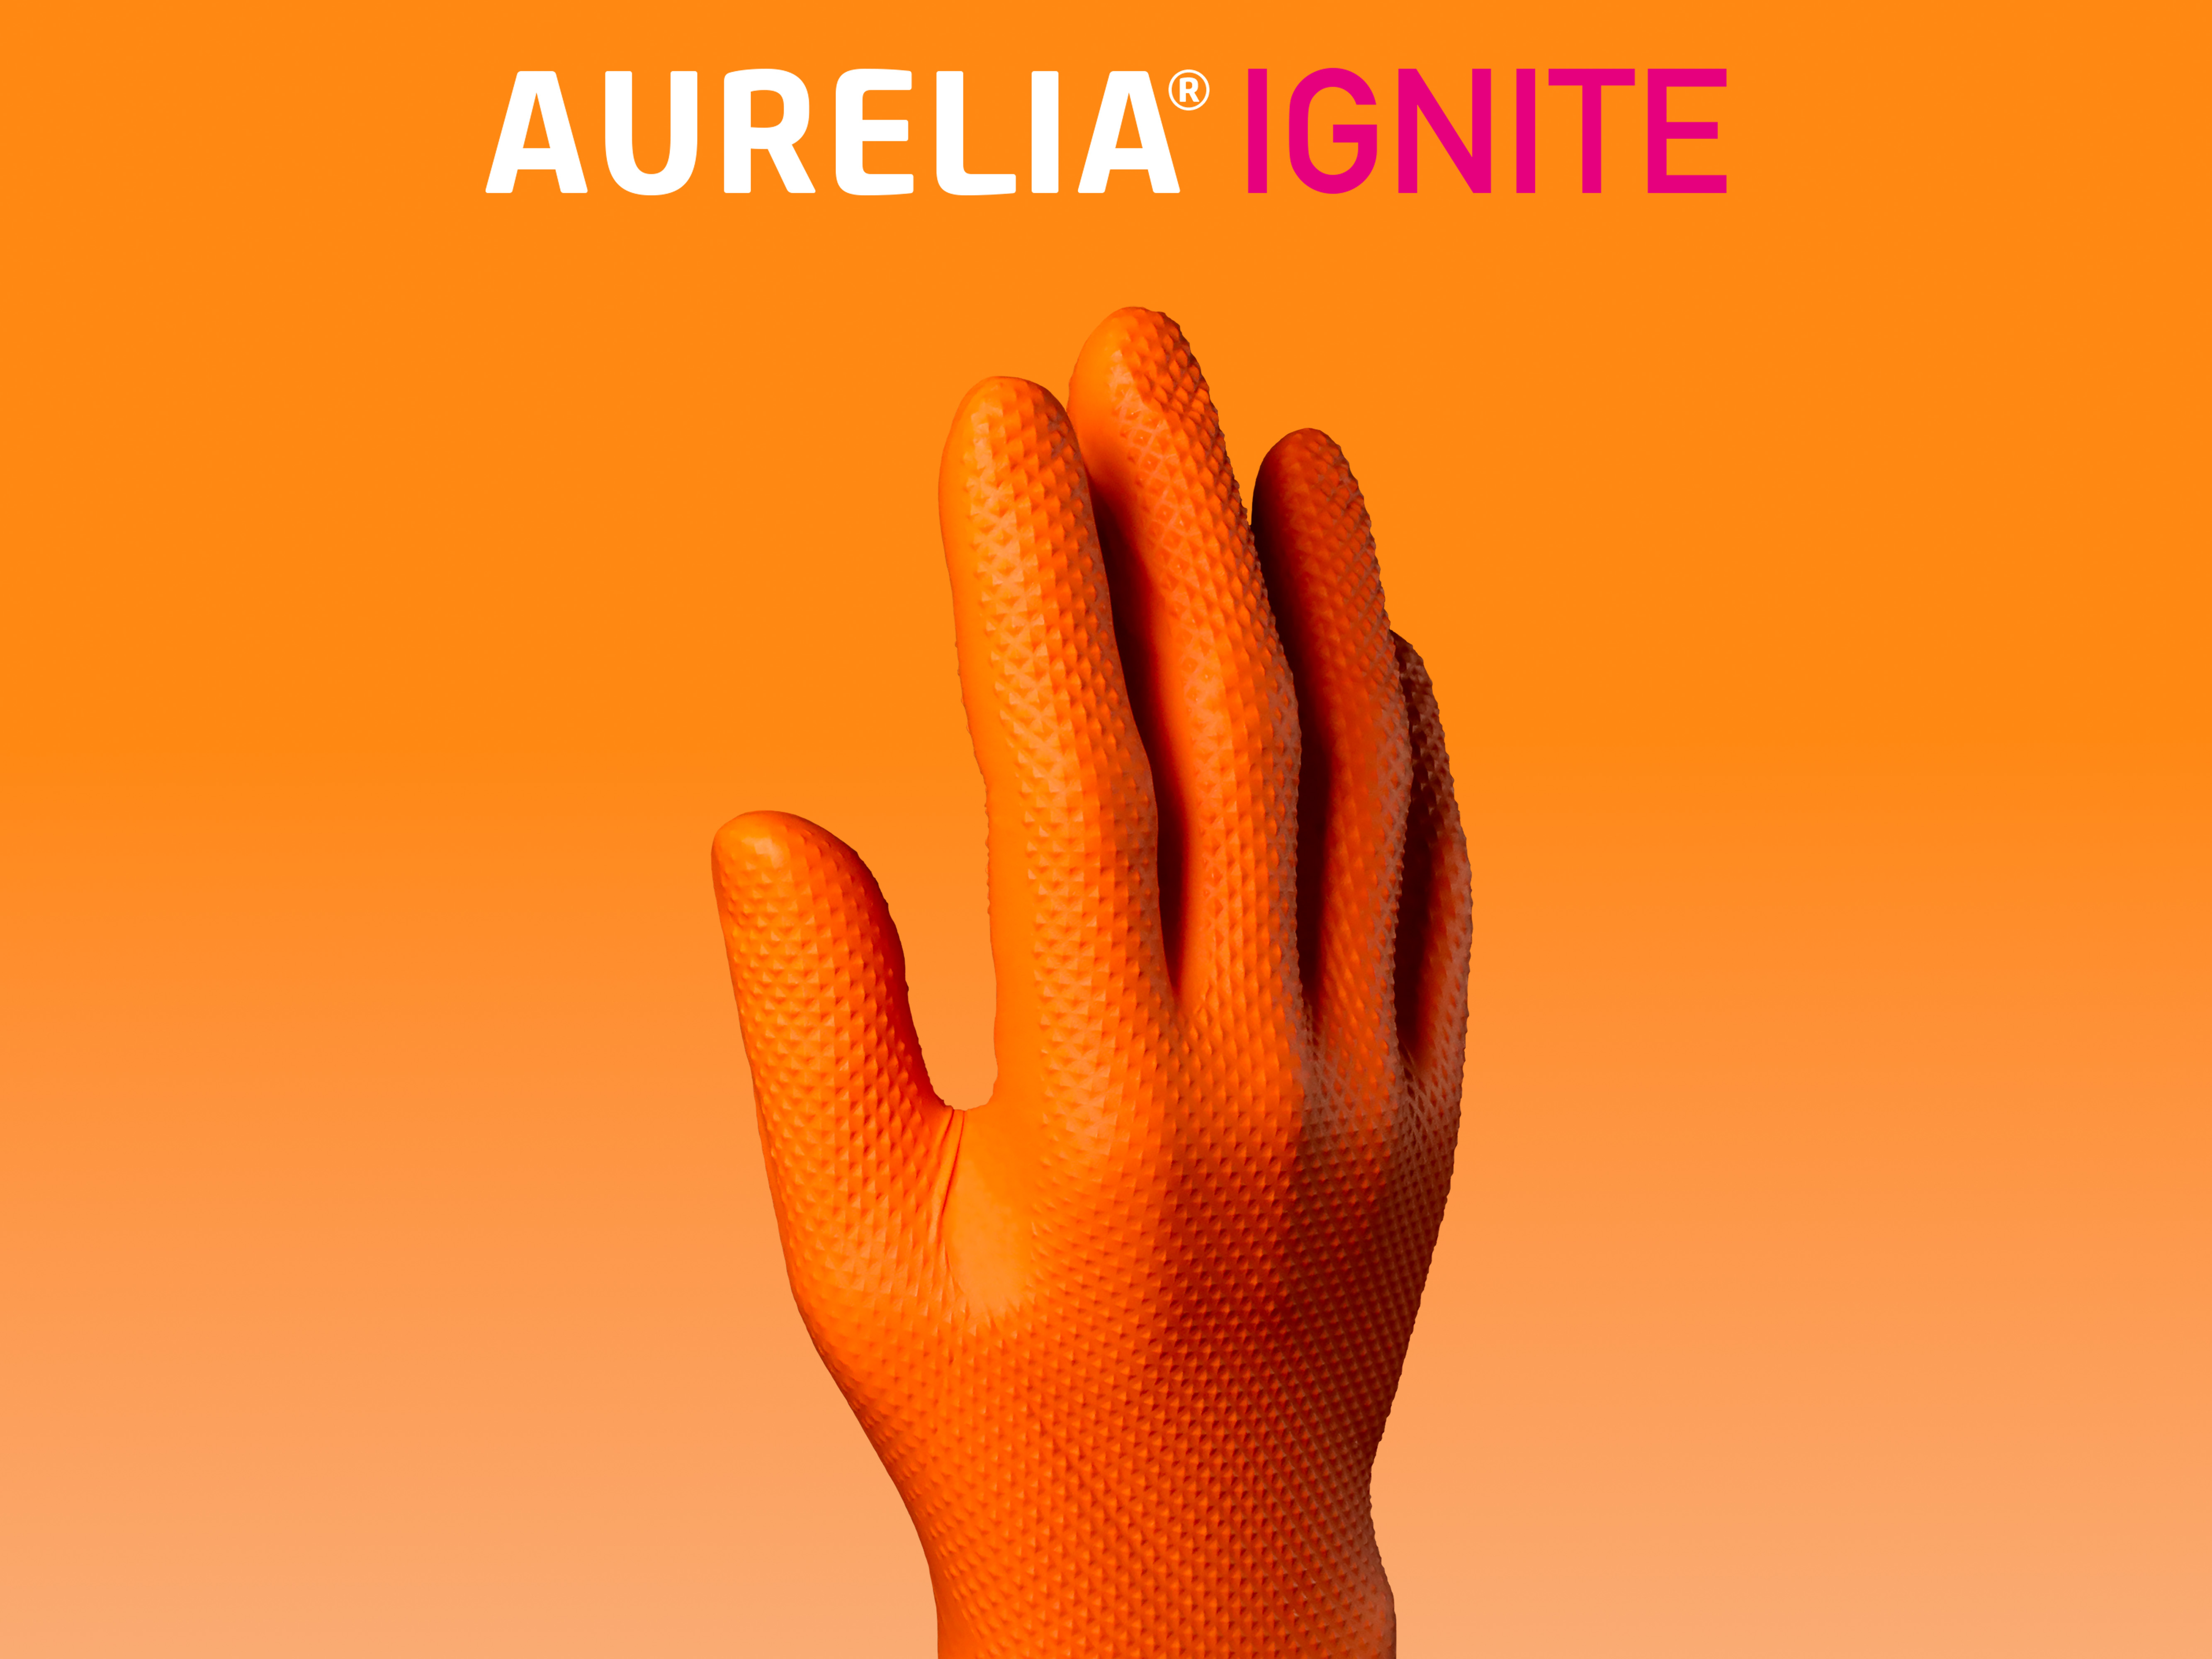 Aurelia Ignite